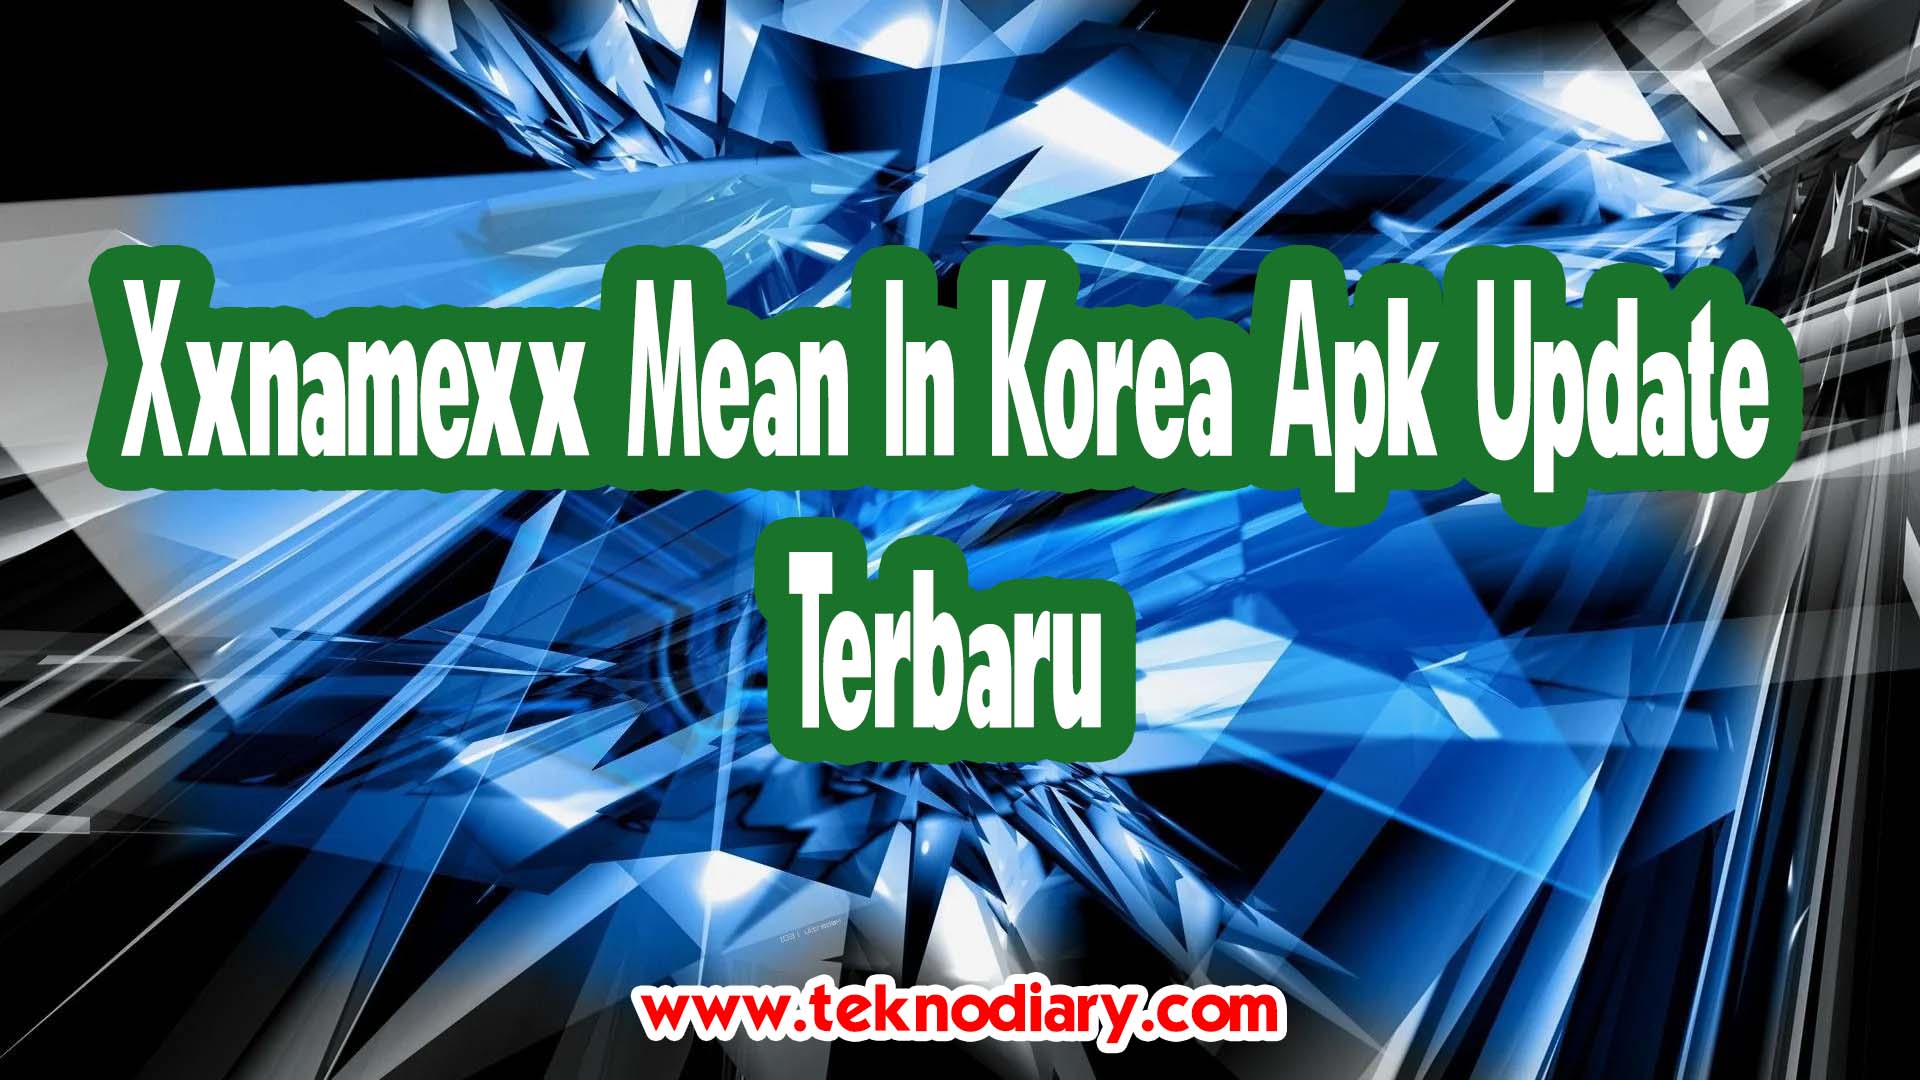 Xxnamexx Mean In Korea Apk Update Terbaru